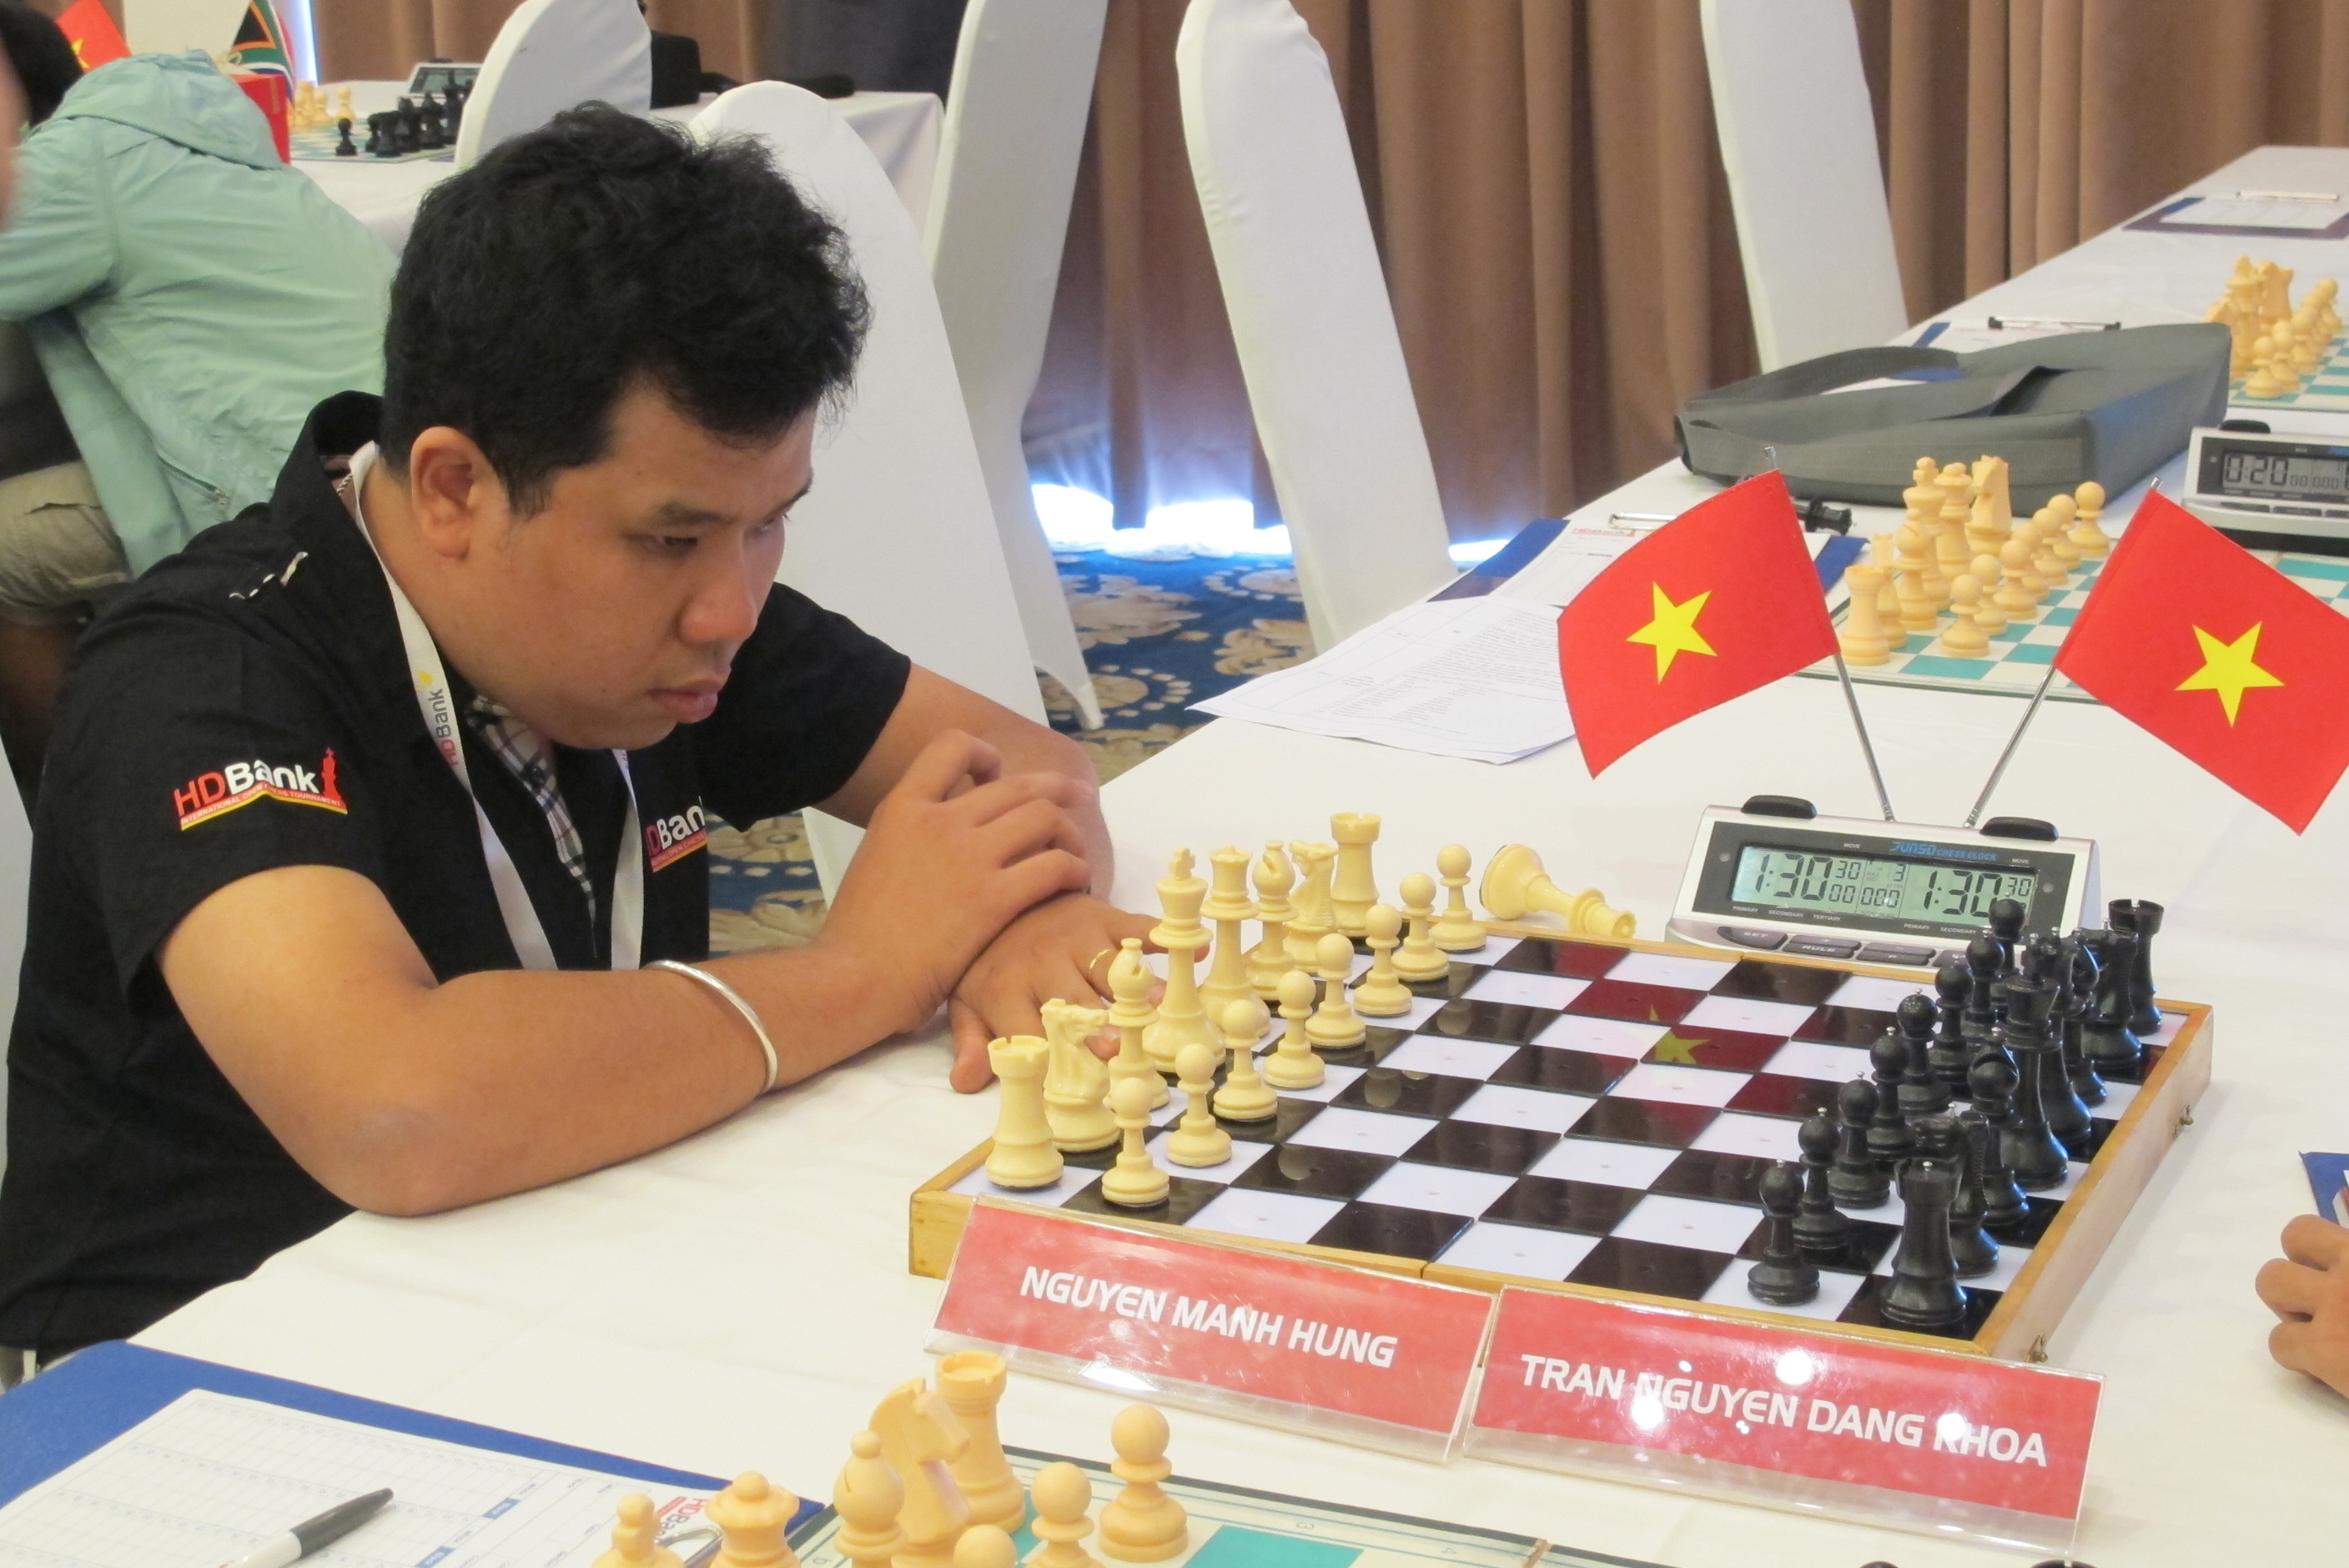 Nguyễn Mạnh Hùng thi đấu tại giải cờ vua quốc tế HDBank 2016